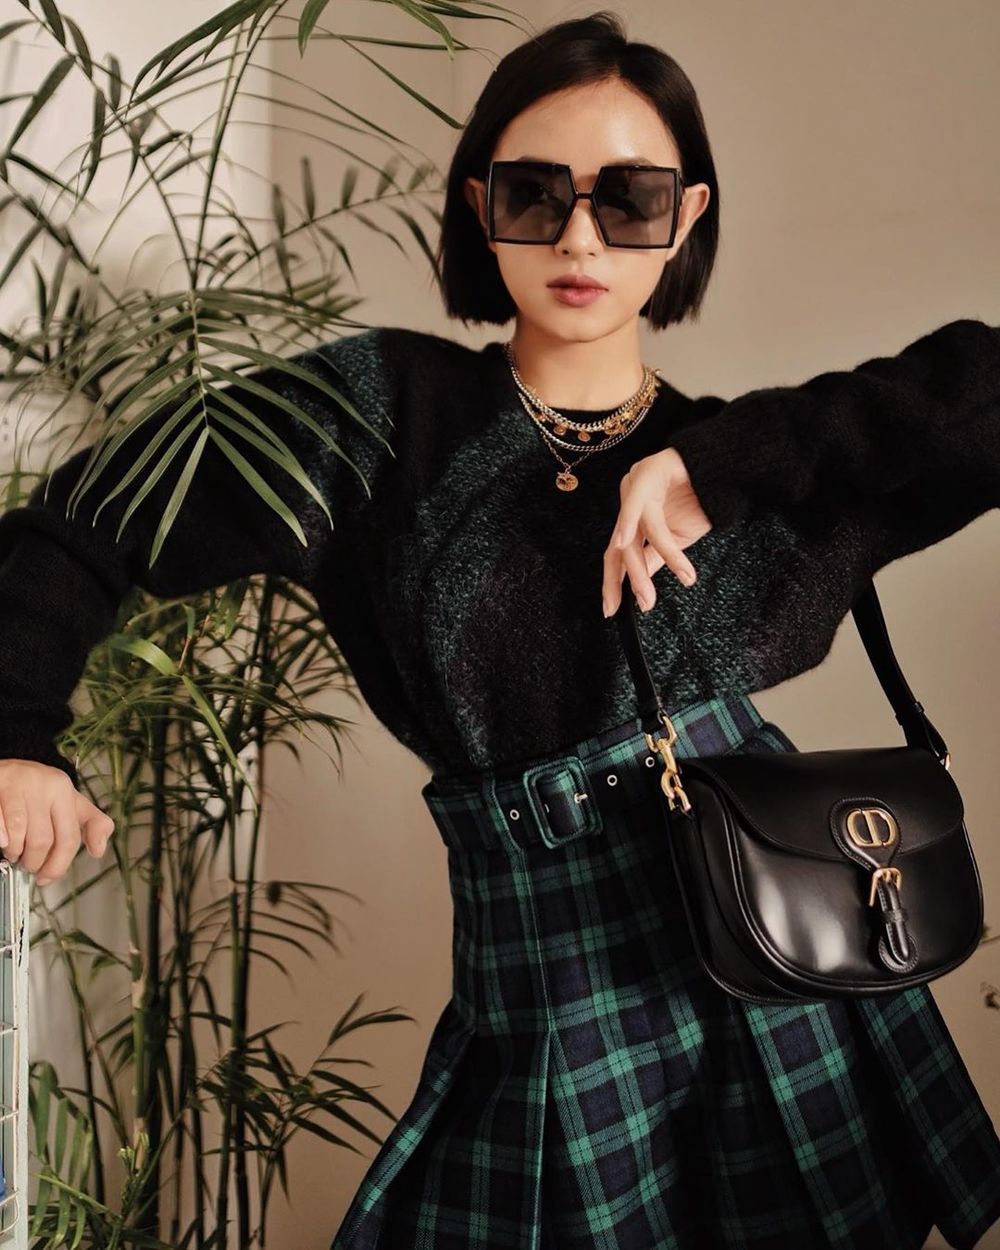  
Châu Bùi xứng danh fashion icon được yêu thích nhất Vbiz, người đẹp sinh năm 1997 diện sweater lông phối màu đen xanh cùng chân váy ca rô đồng điệu đến từ nhà mốt Dior. (Ảnh: Instagram nhân vật)